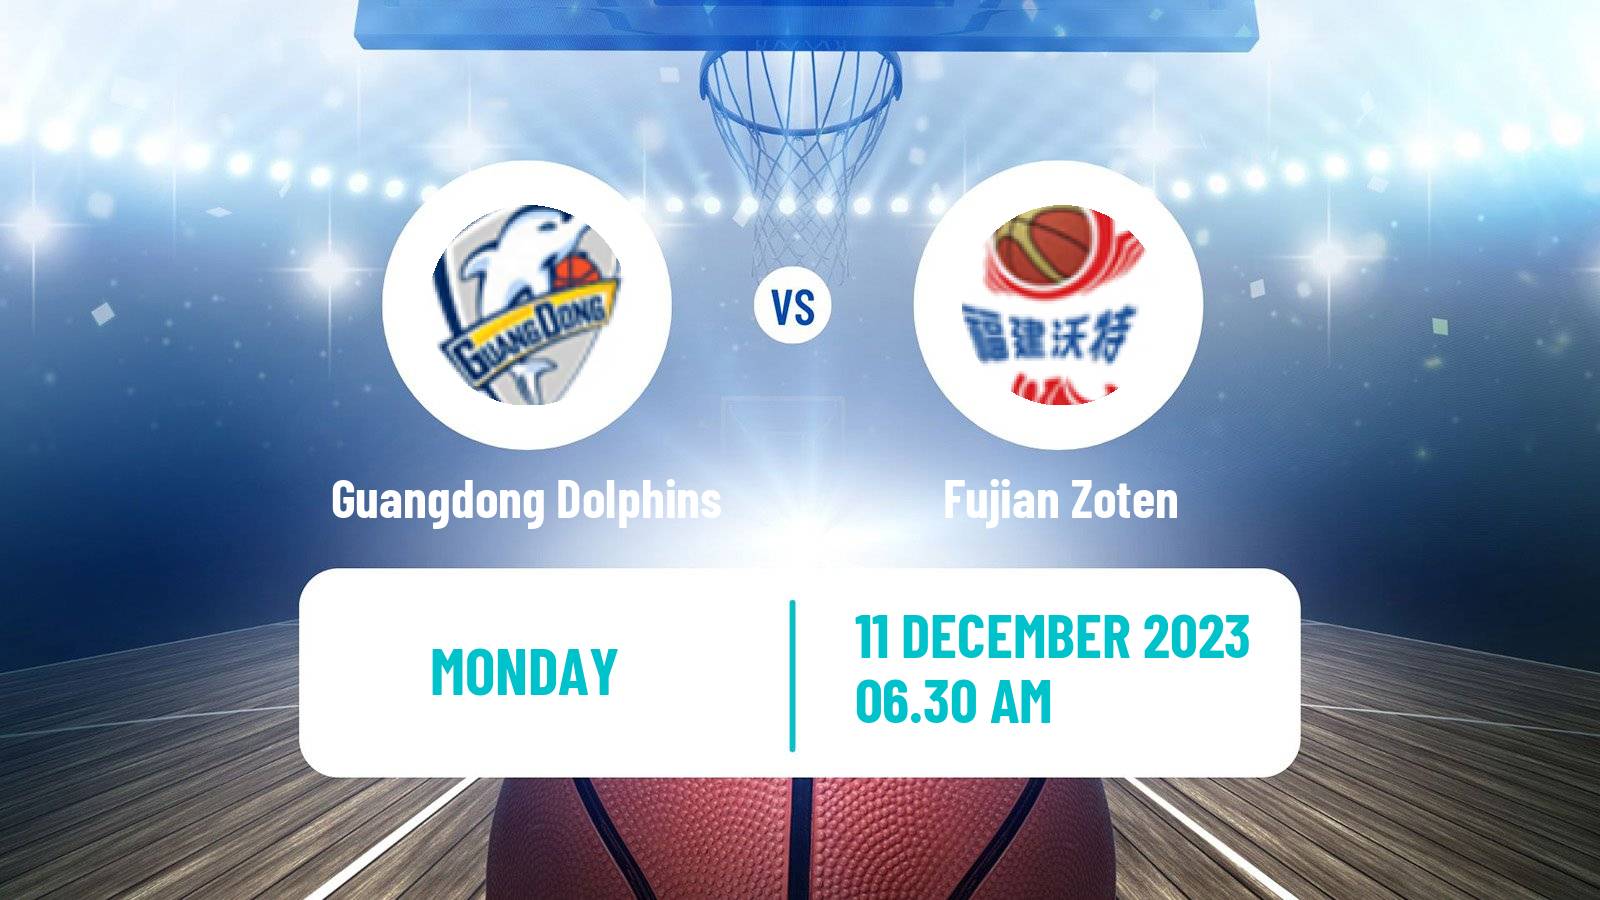 Basketball WCBA Guangdong Dolphins - Fujian Zoten